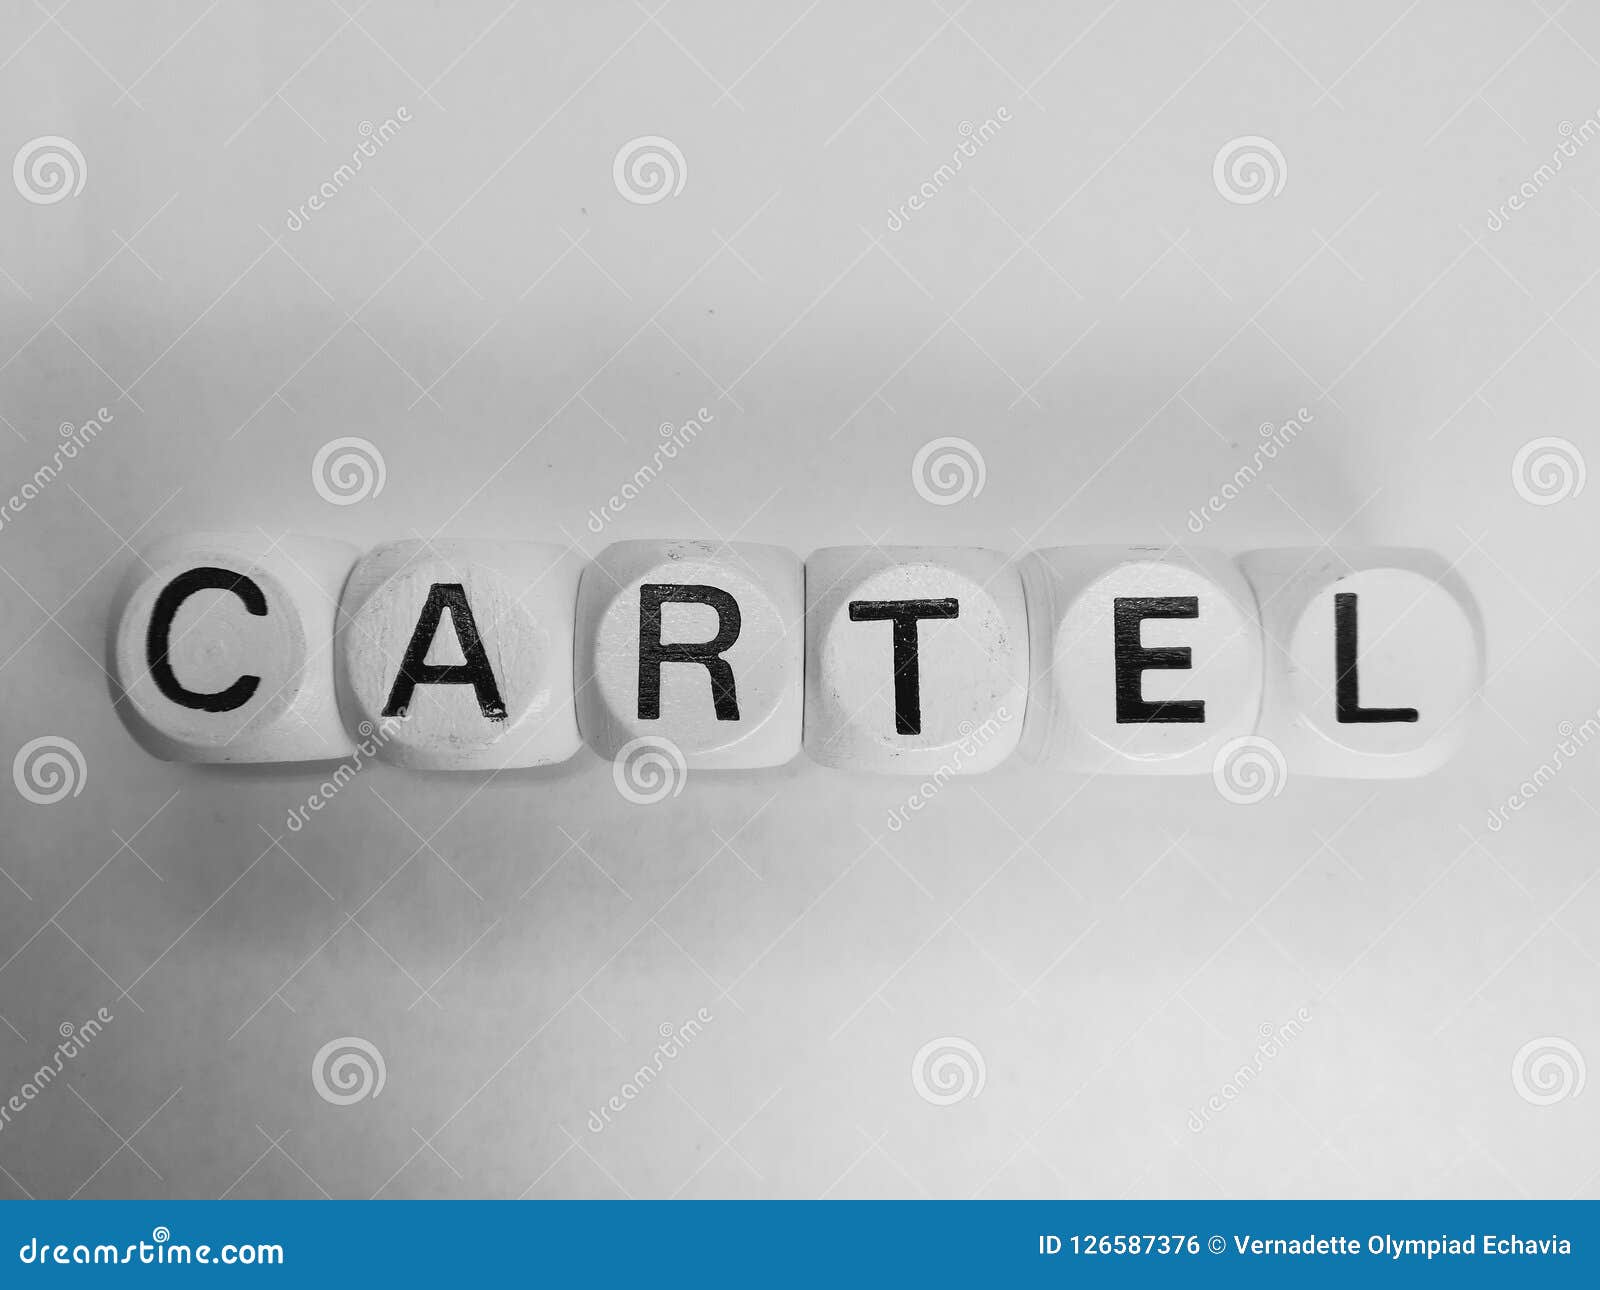 word cartel spelled on dice